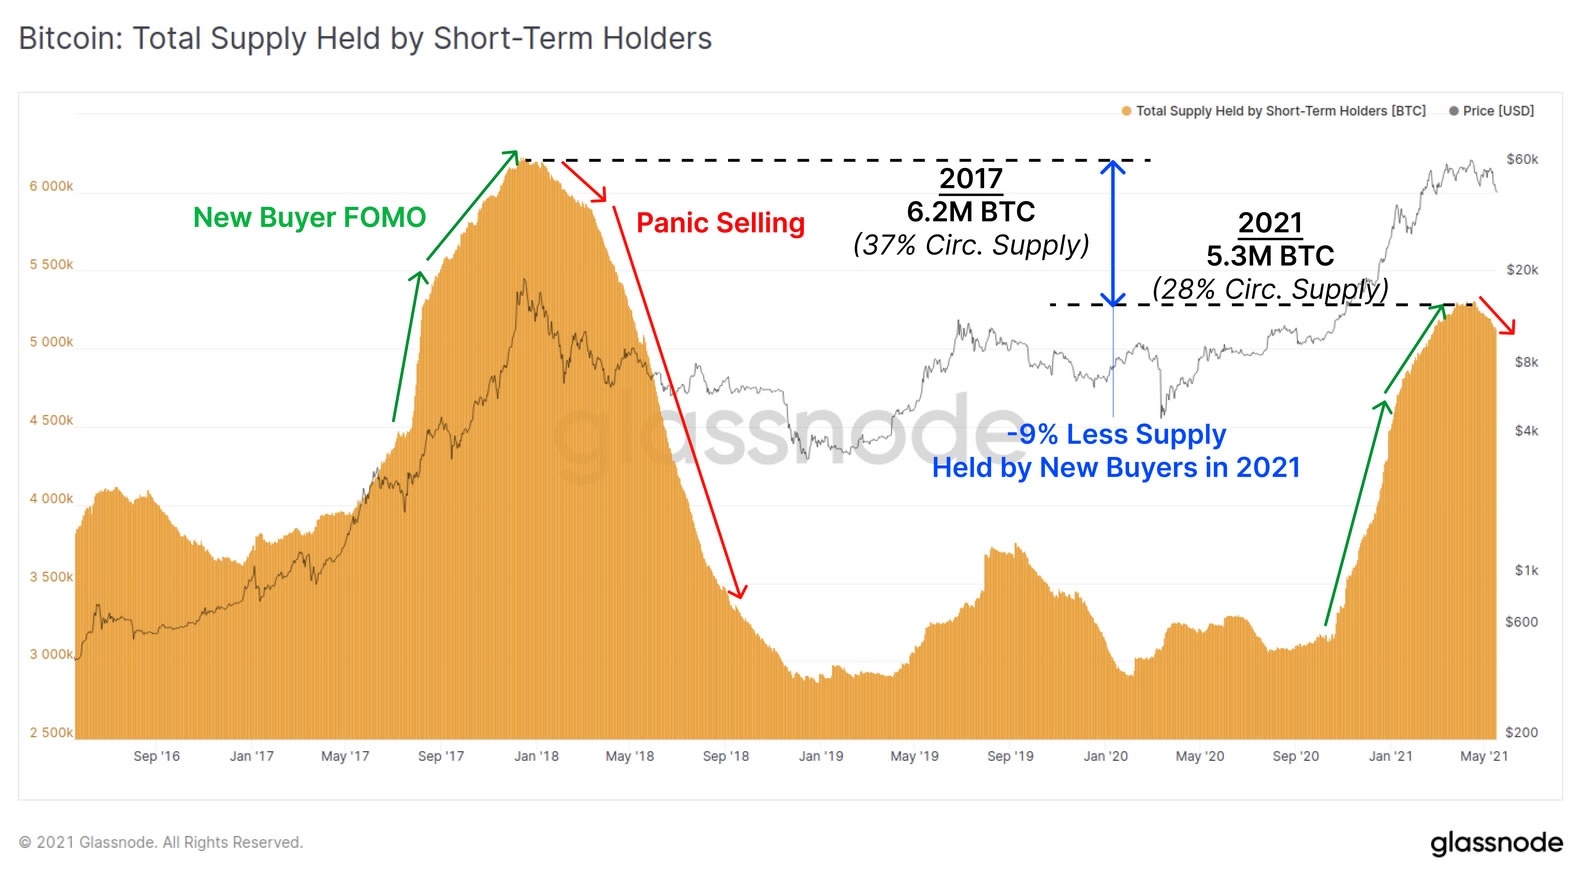 نمودار گردش کل - همزمان با سقوط قیمت بیت کوین، تازه واردان بازار با وحشت دارایی های خود را می فروشند